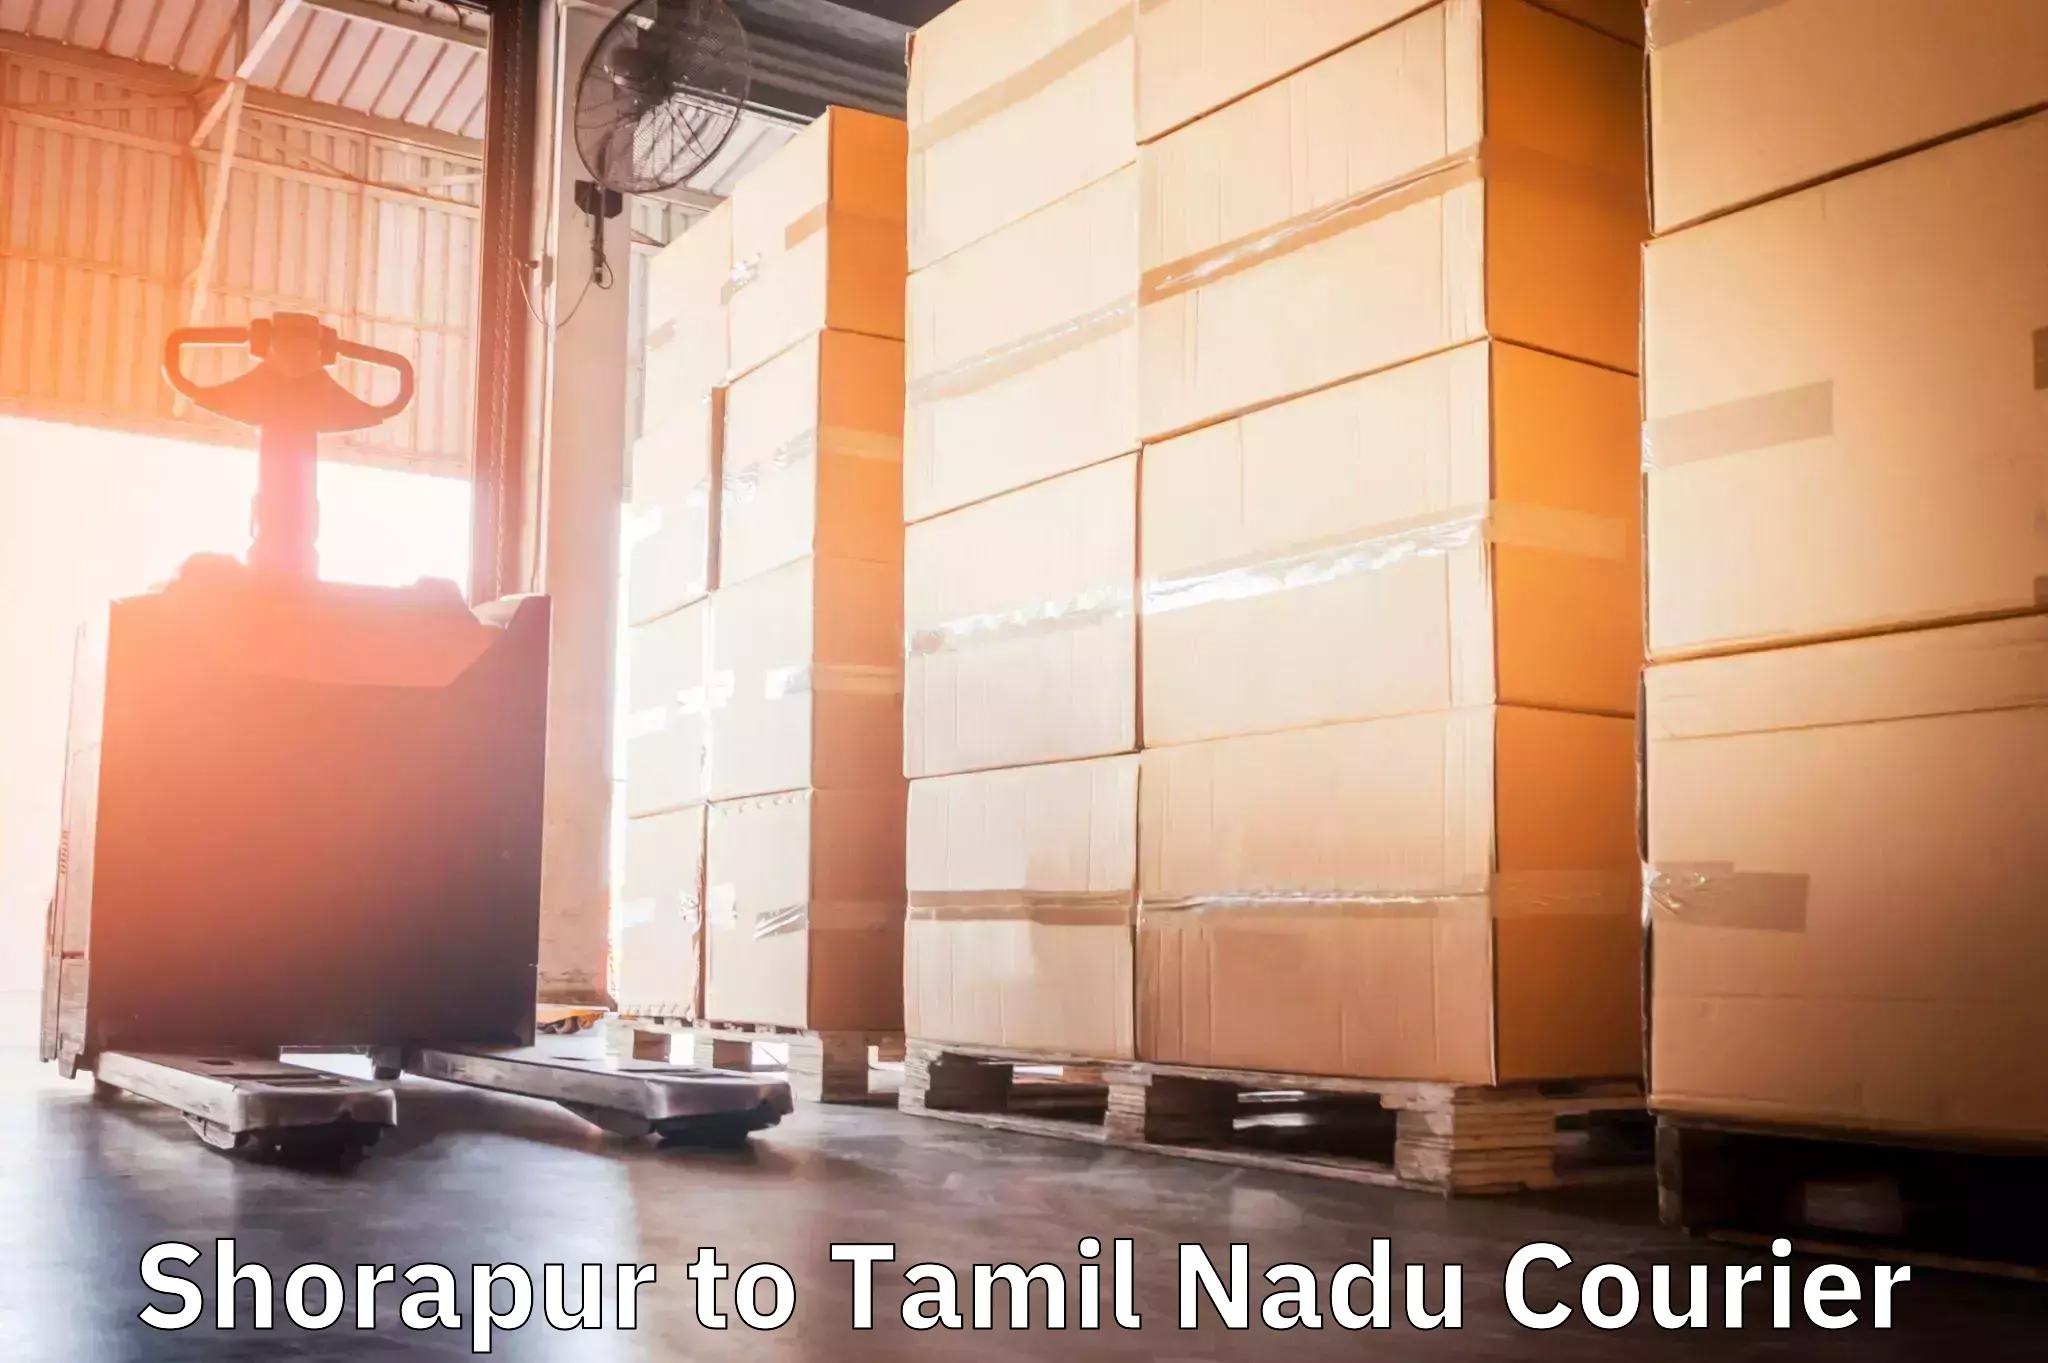 Efficient parcel service Shorapur to IIIT Tiruchirappalli